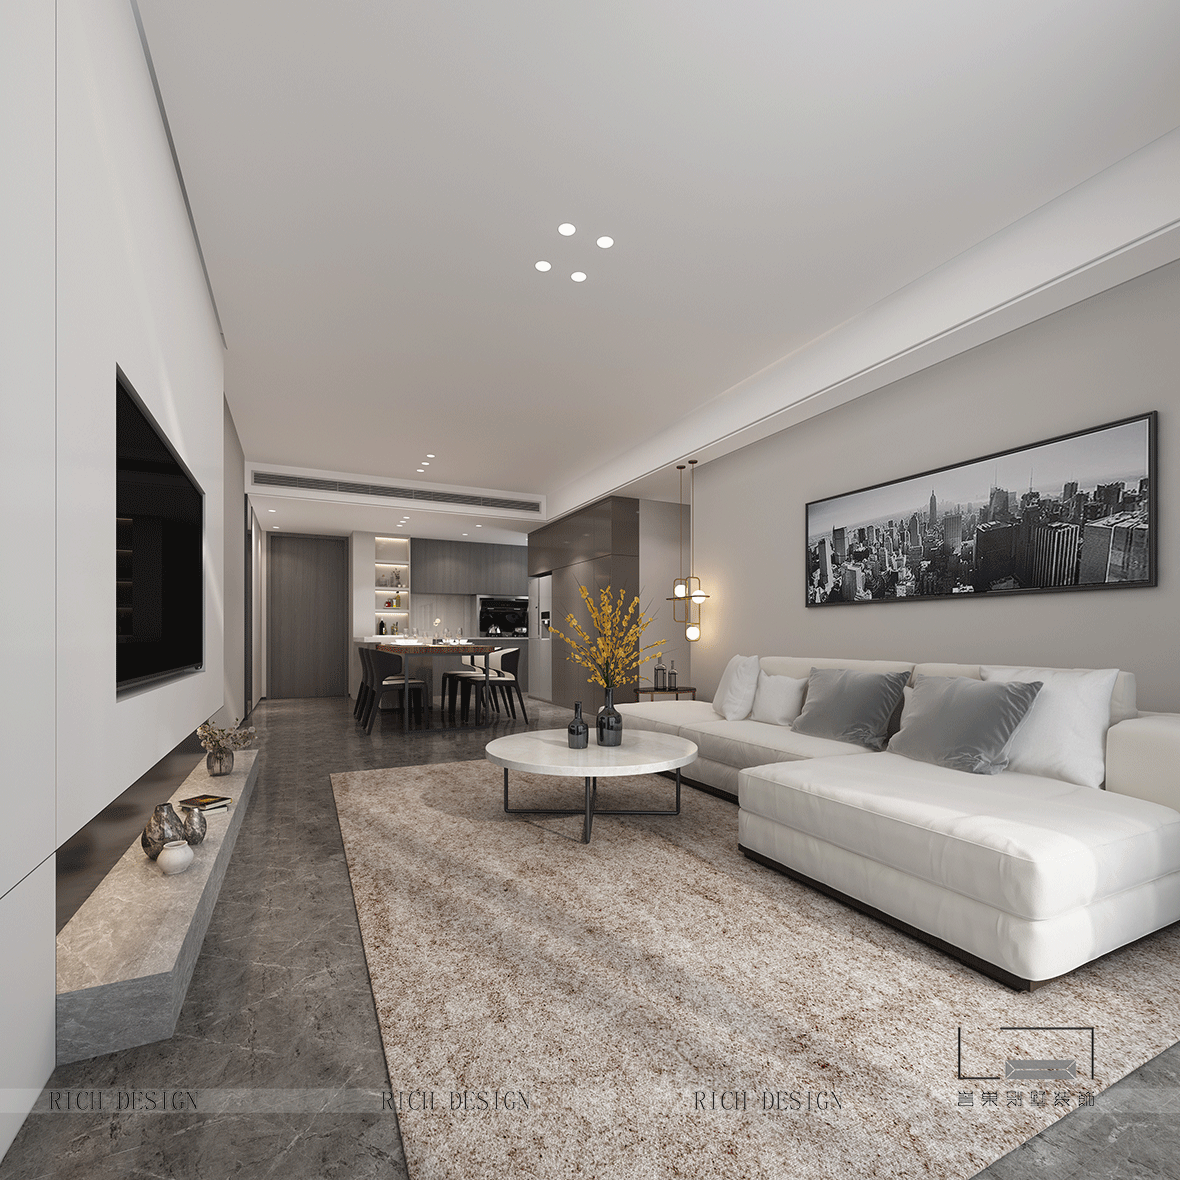 质感柔软前海丹华客厅沙发101-120m²四居及以上现代简约家装装修案例效果图